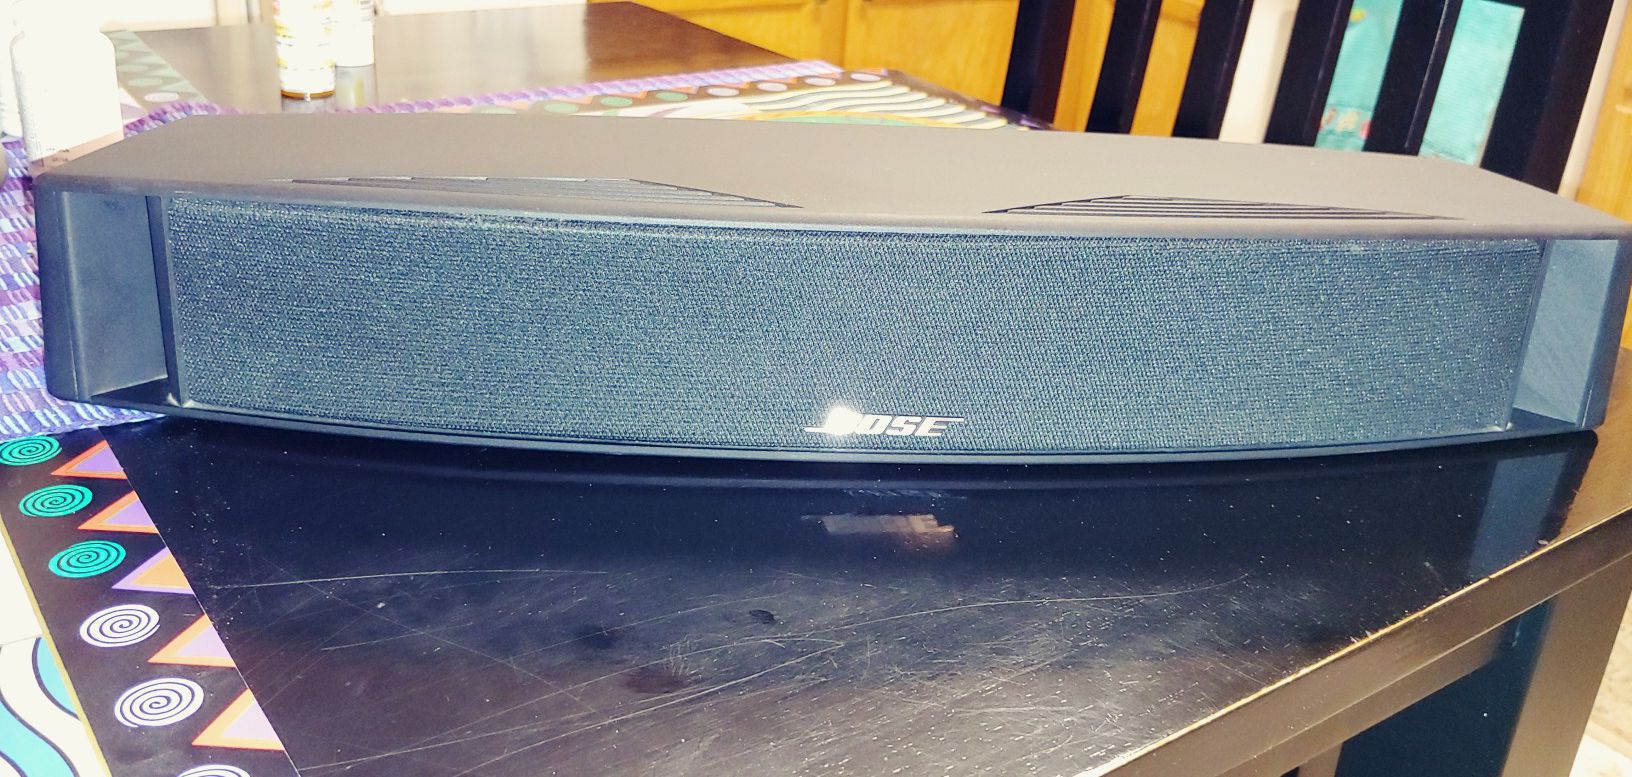 Bose vcs10 center speaker